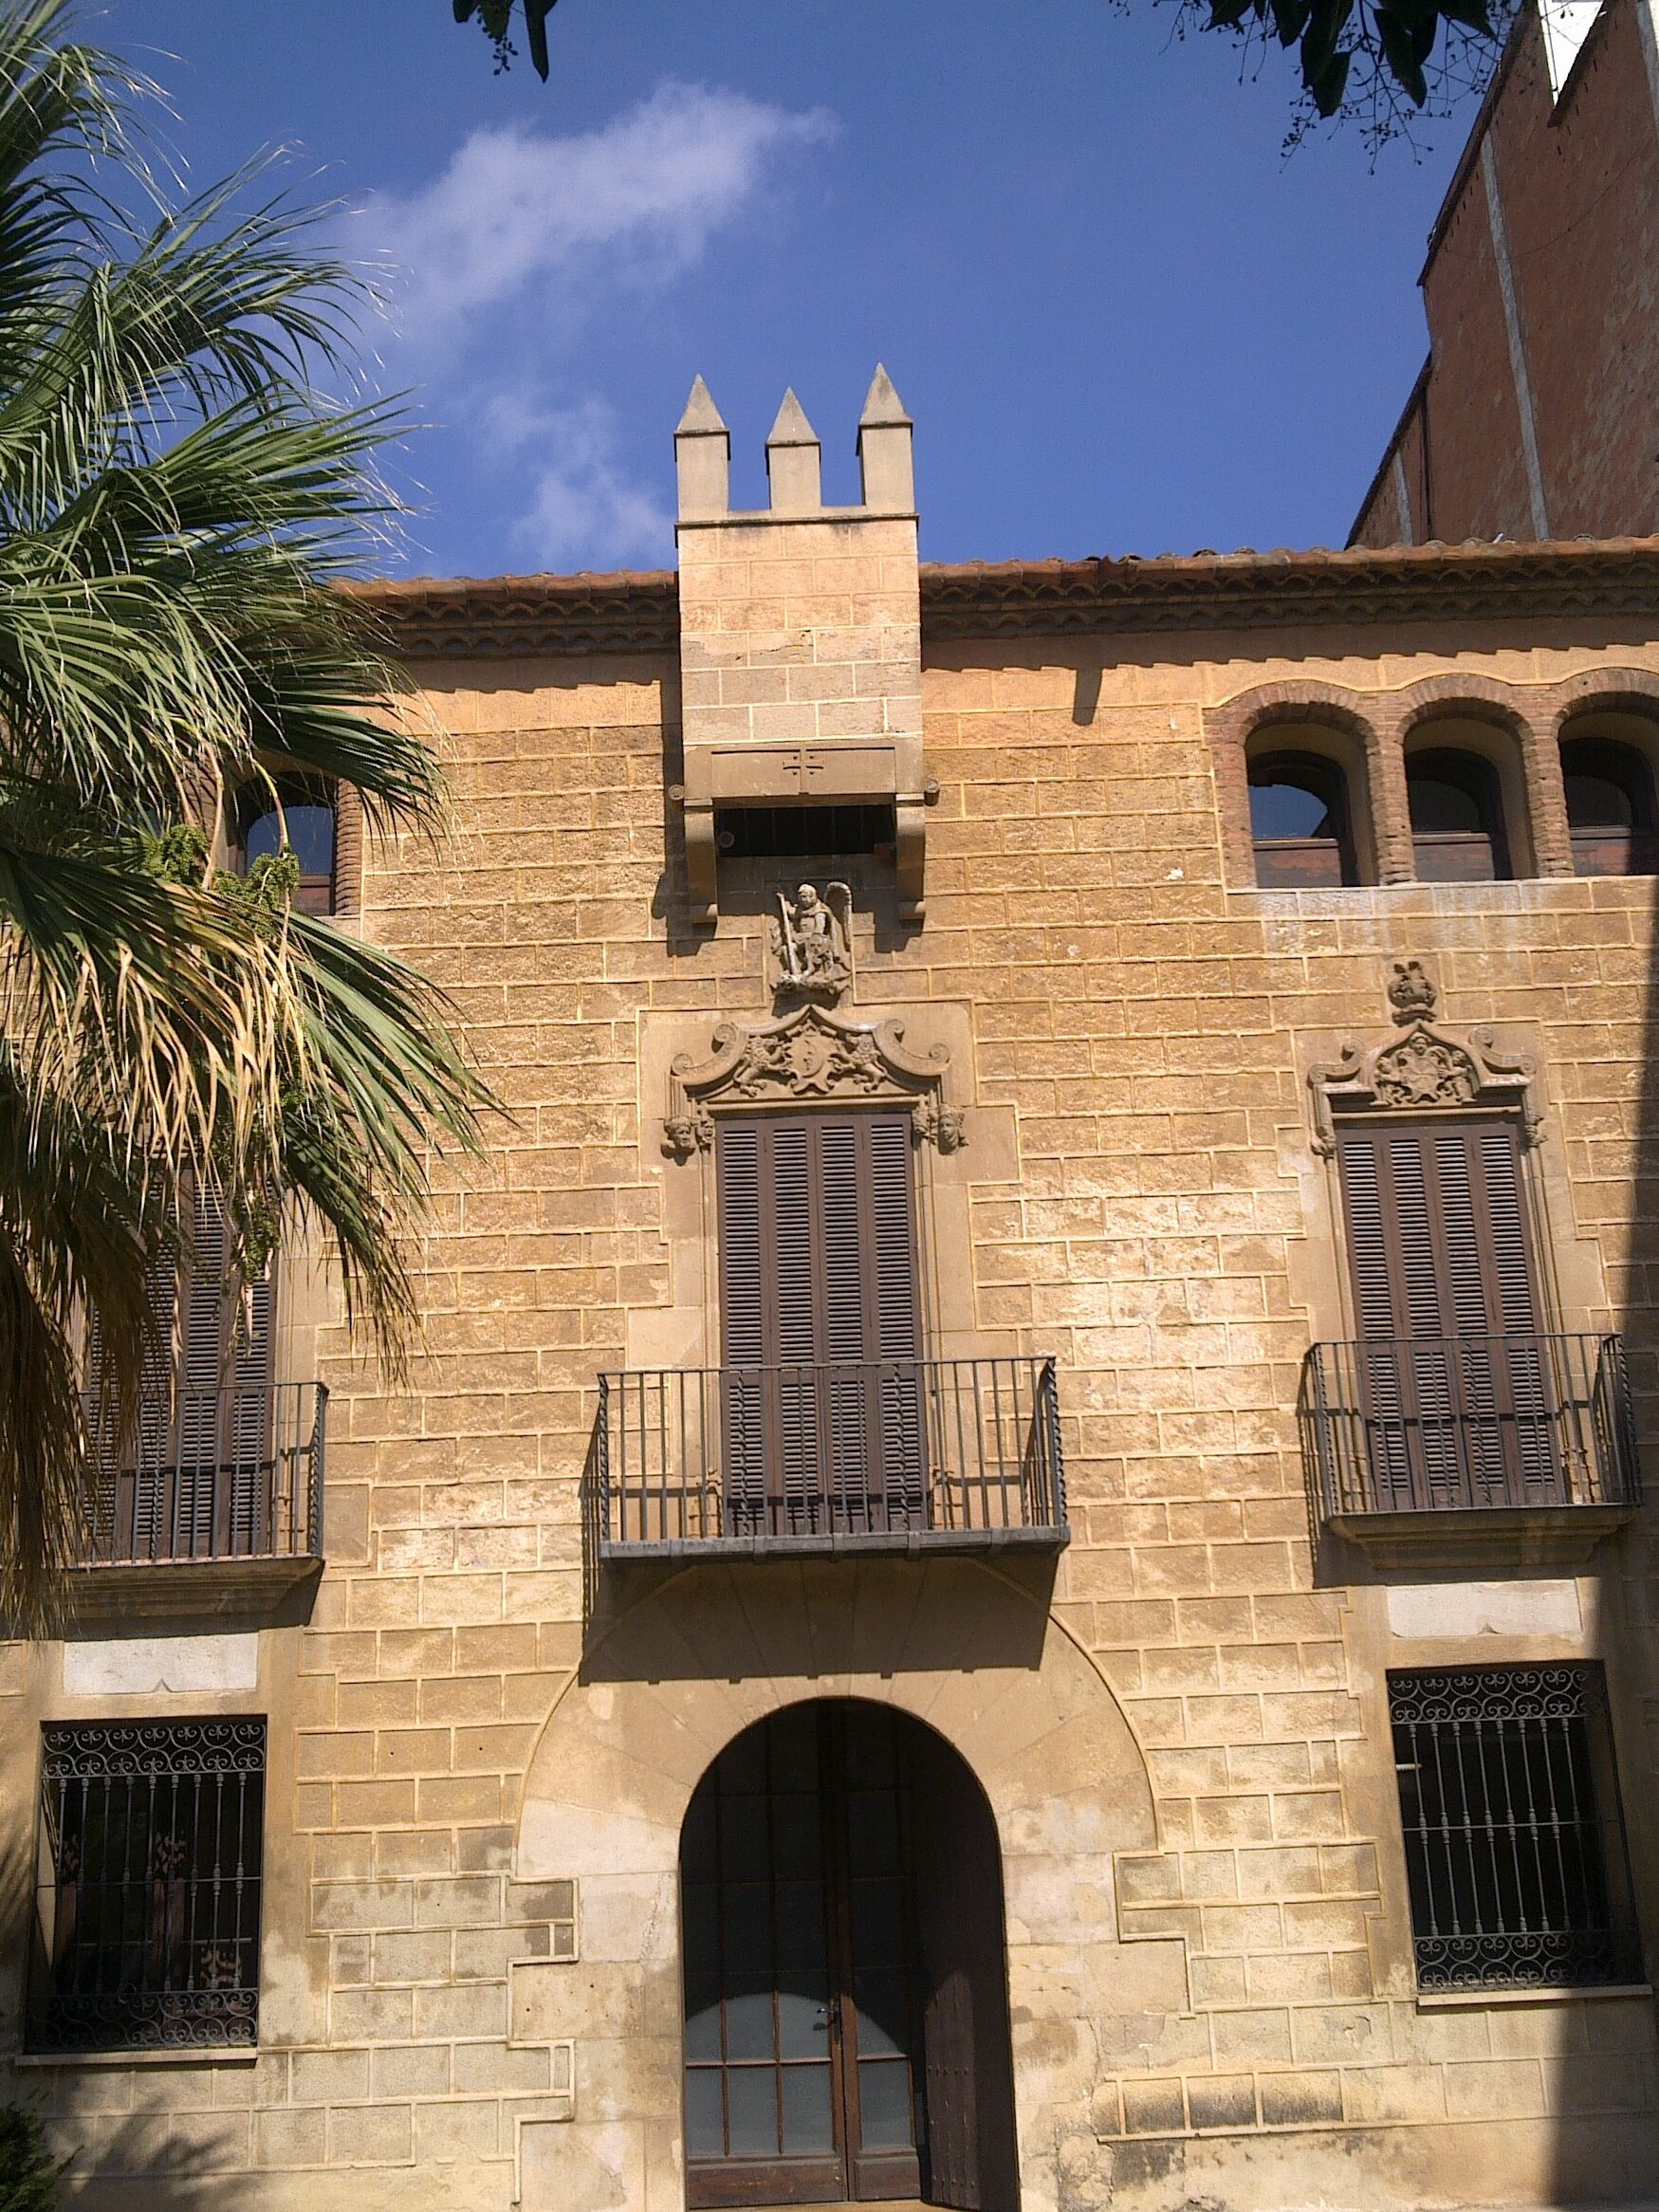 MUSEU DE LʼHOSPITALET		Hospitalet de Llobregat (Lʼ)	Barcelona	Museo